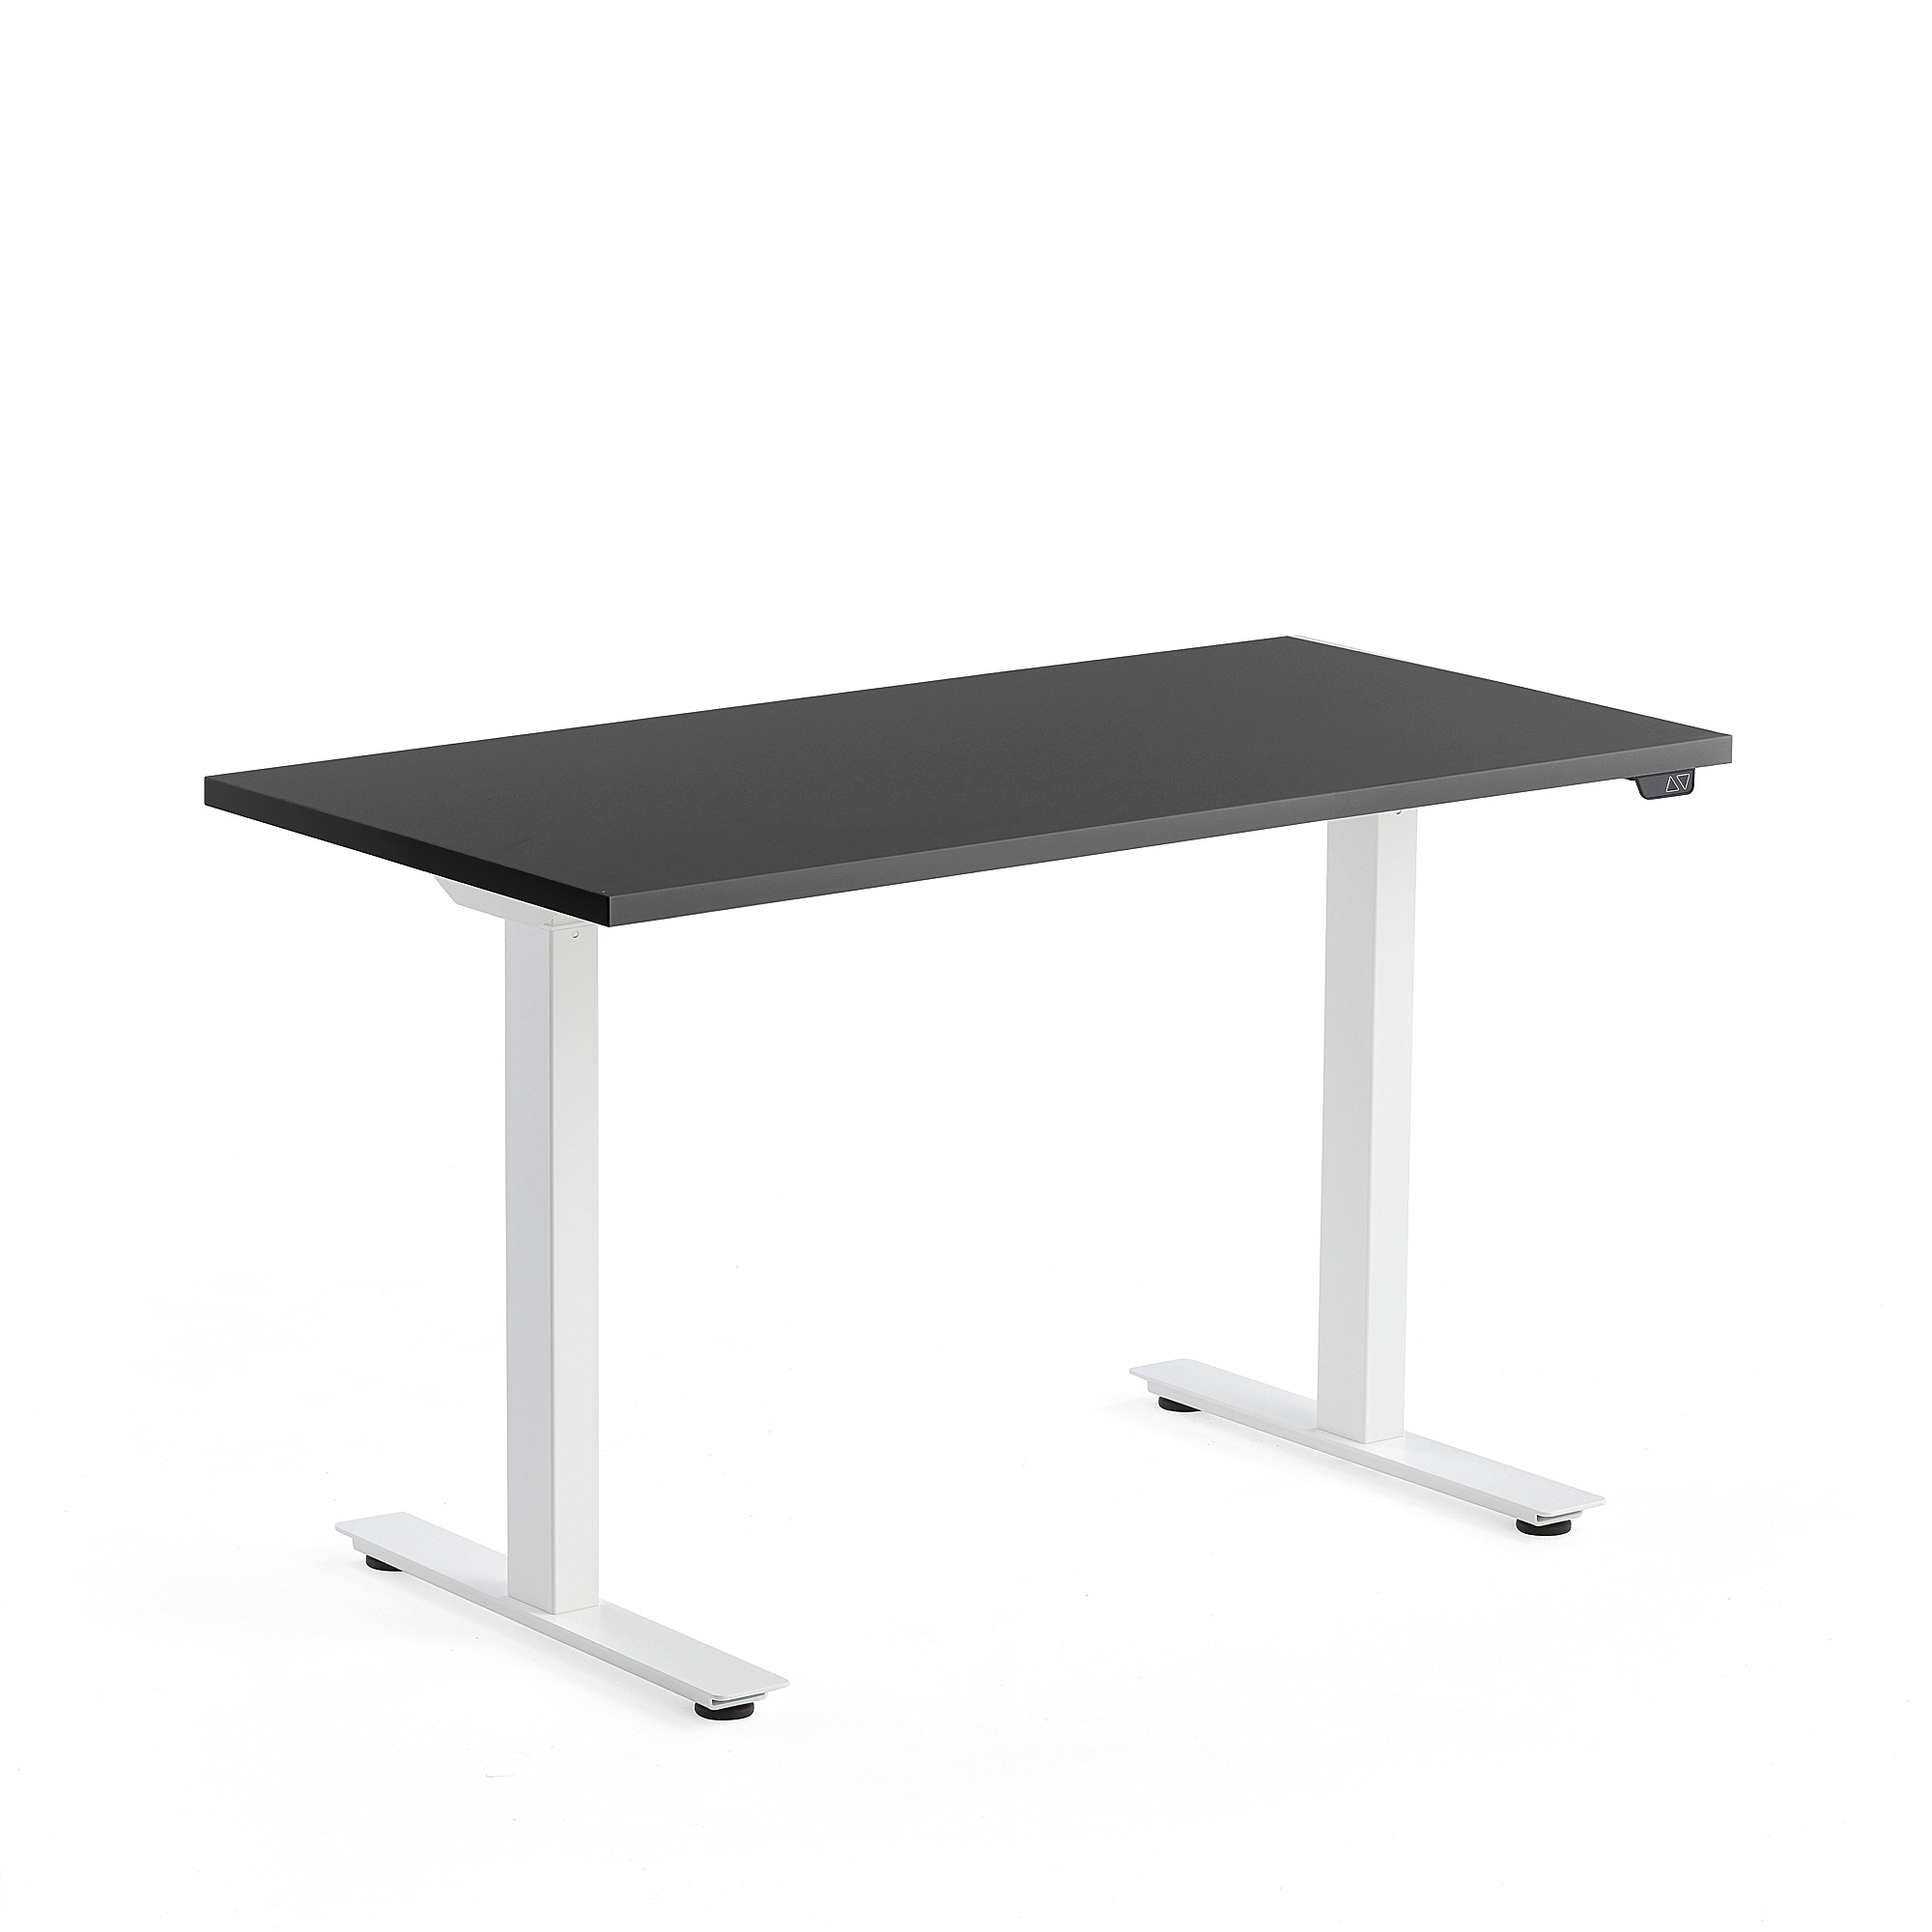 Výškově nastavitelný stůl MODULUS, 1200x600 mm, bílý rám, černá